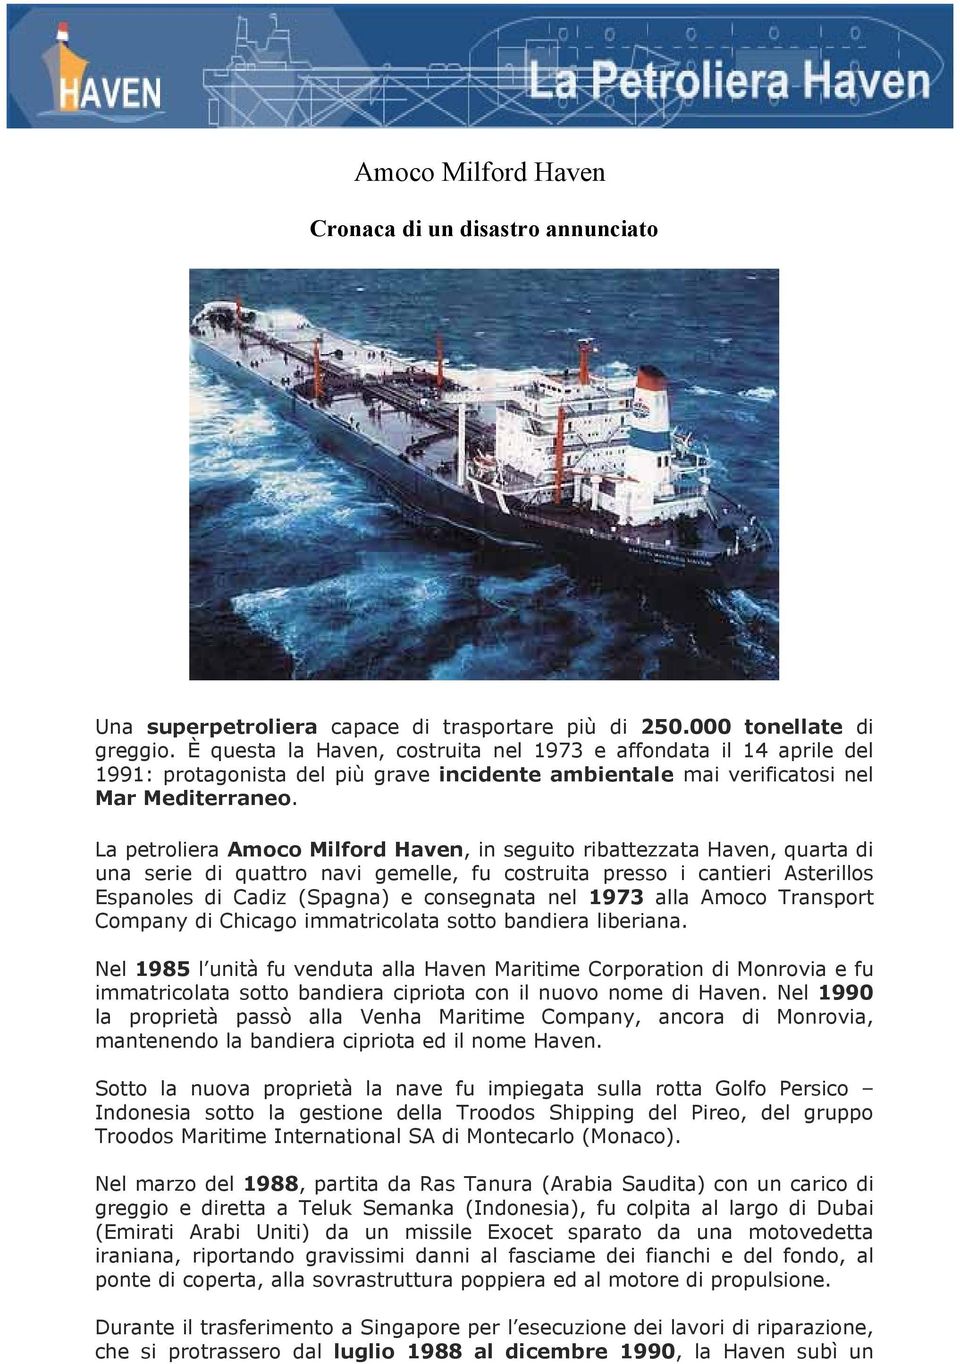 La petroliera Amoco Milford Haven, in seguito ribattezzata Haven, quarta di una serie di quattro navi gemelle, fu costruita presso i cantieri Asterillos Espanoles di Cadiz (Spagna) e consegnata nel